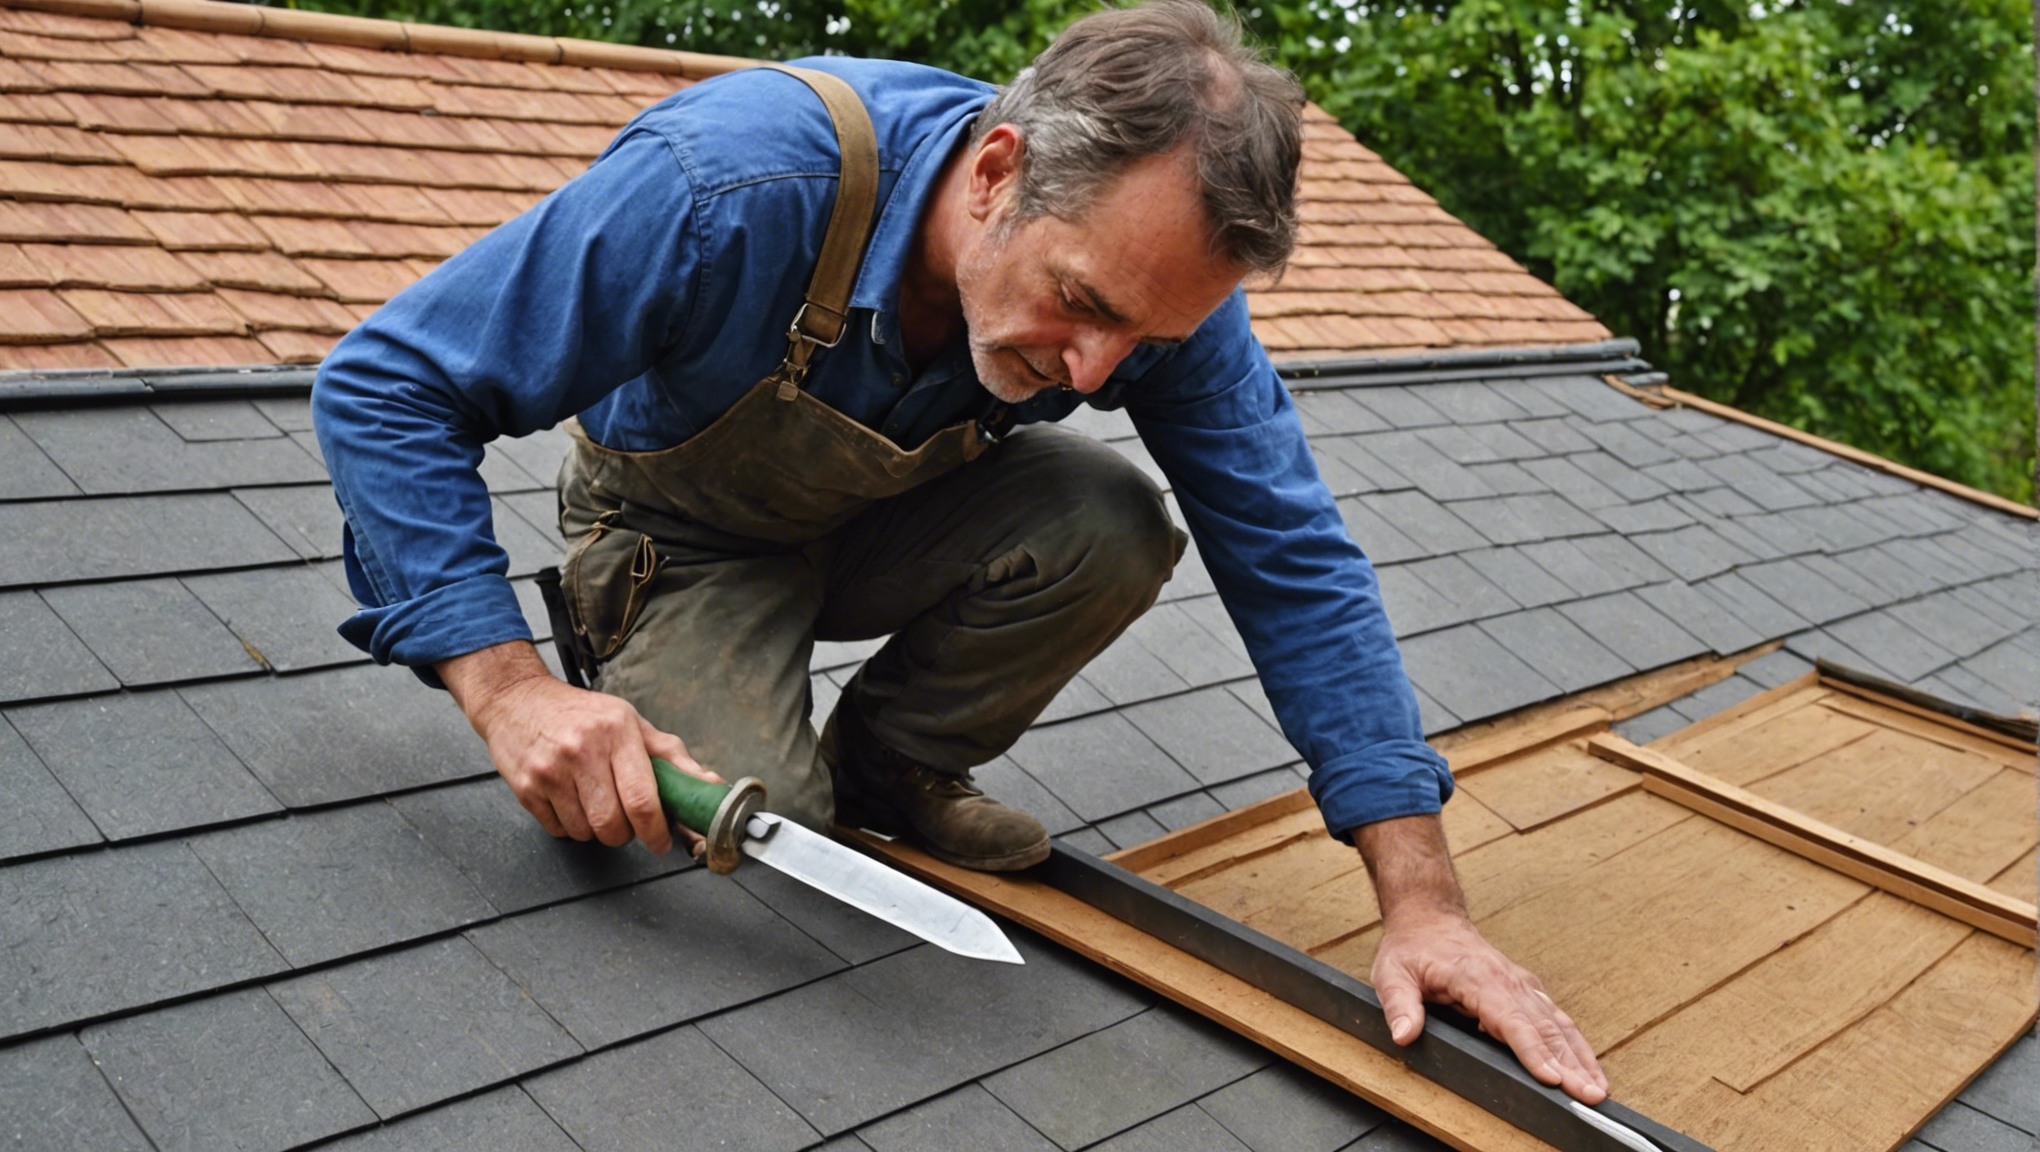 découvrez pourquoi faire appel à un artisan charpentier couvreur pour vos travaux de toiture. obtenez des travaux de qualité et un service personnalisé pour votre projet de toiture.